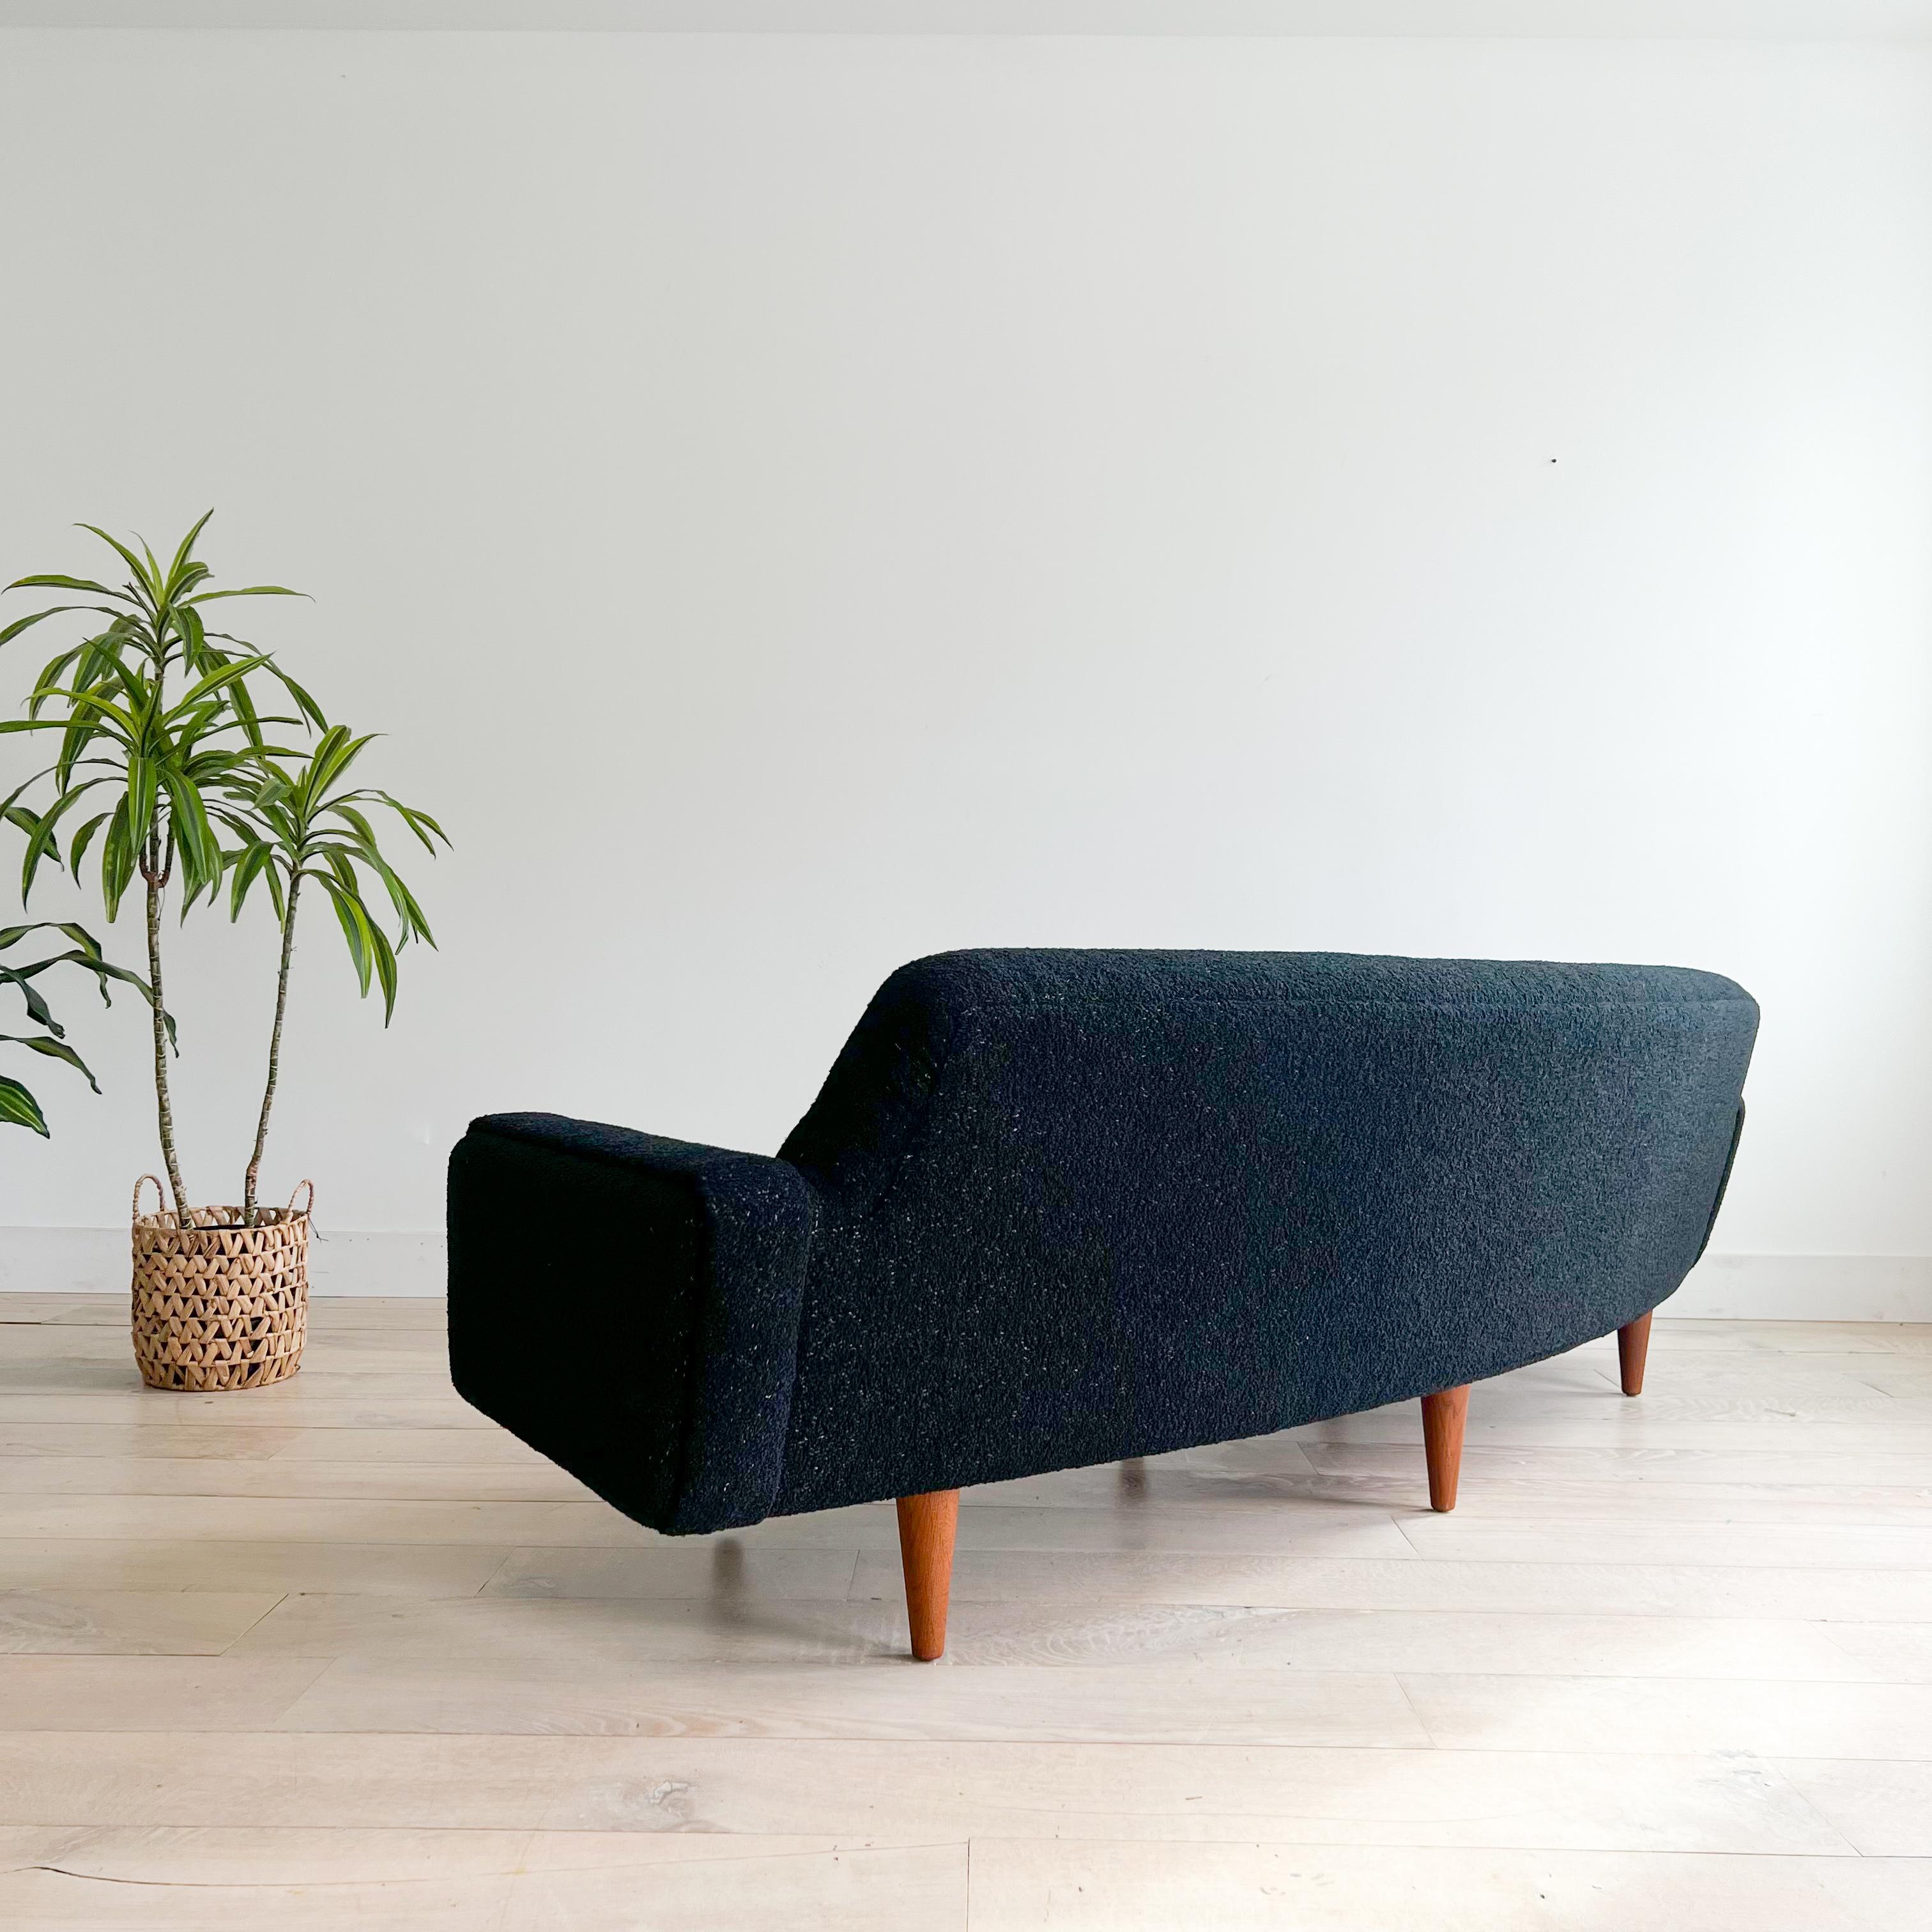 Illum Wikkelso's Rare Banana Curved Sofa - Model 450 - New Upholstery 11